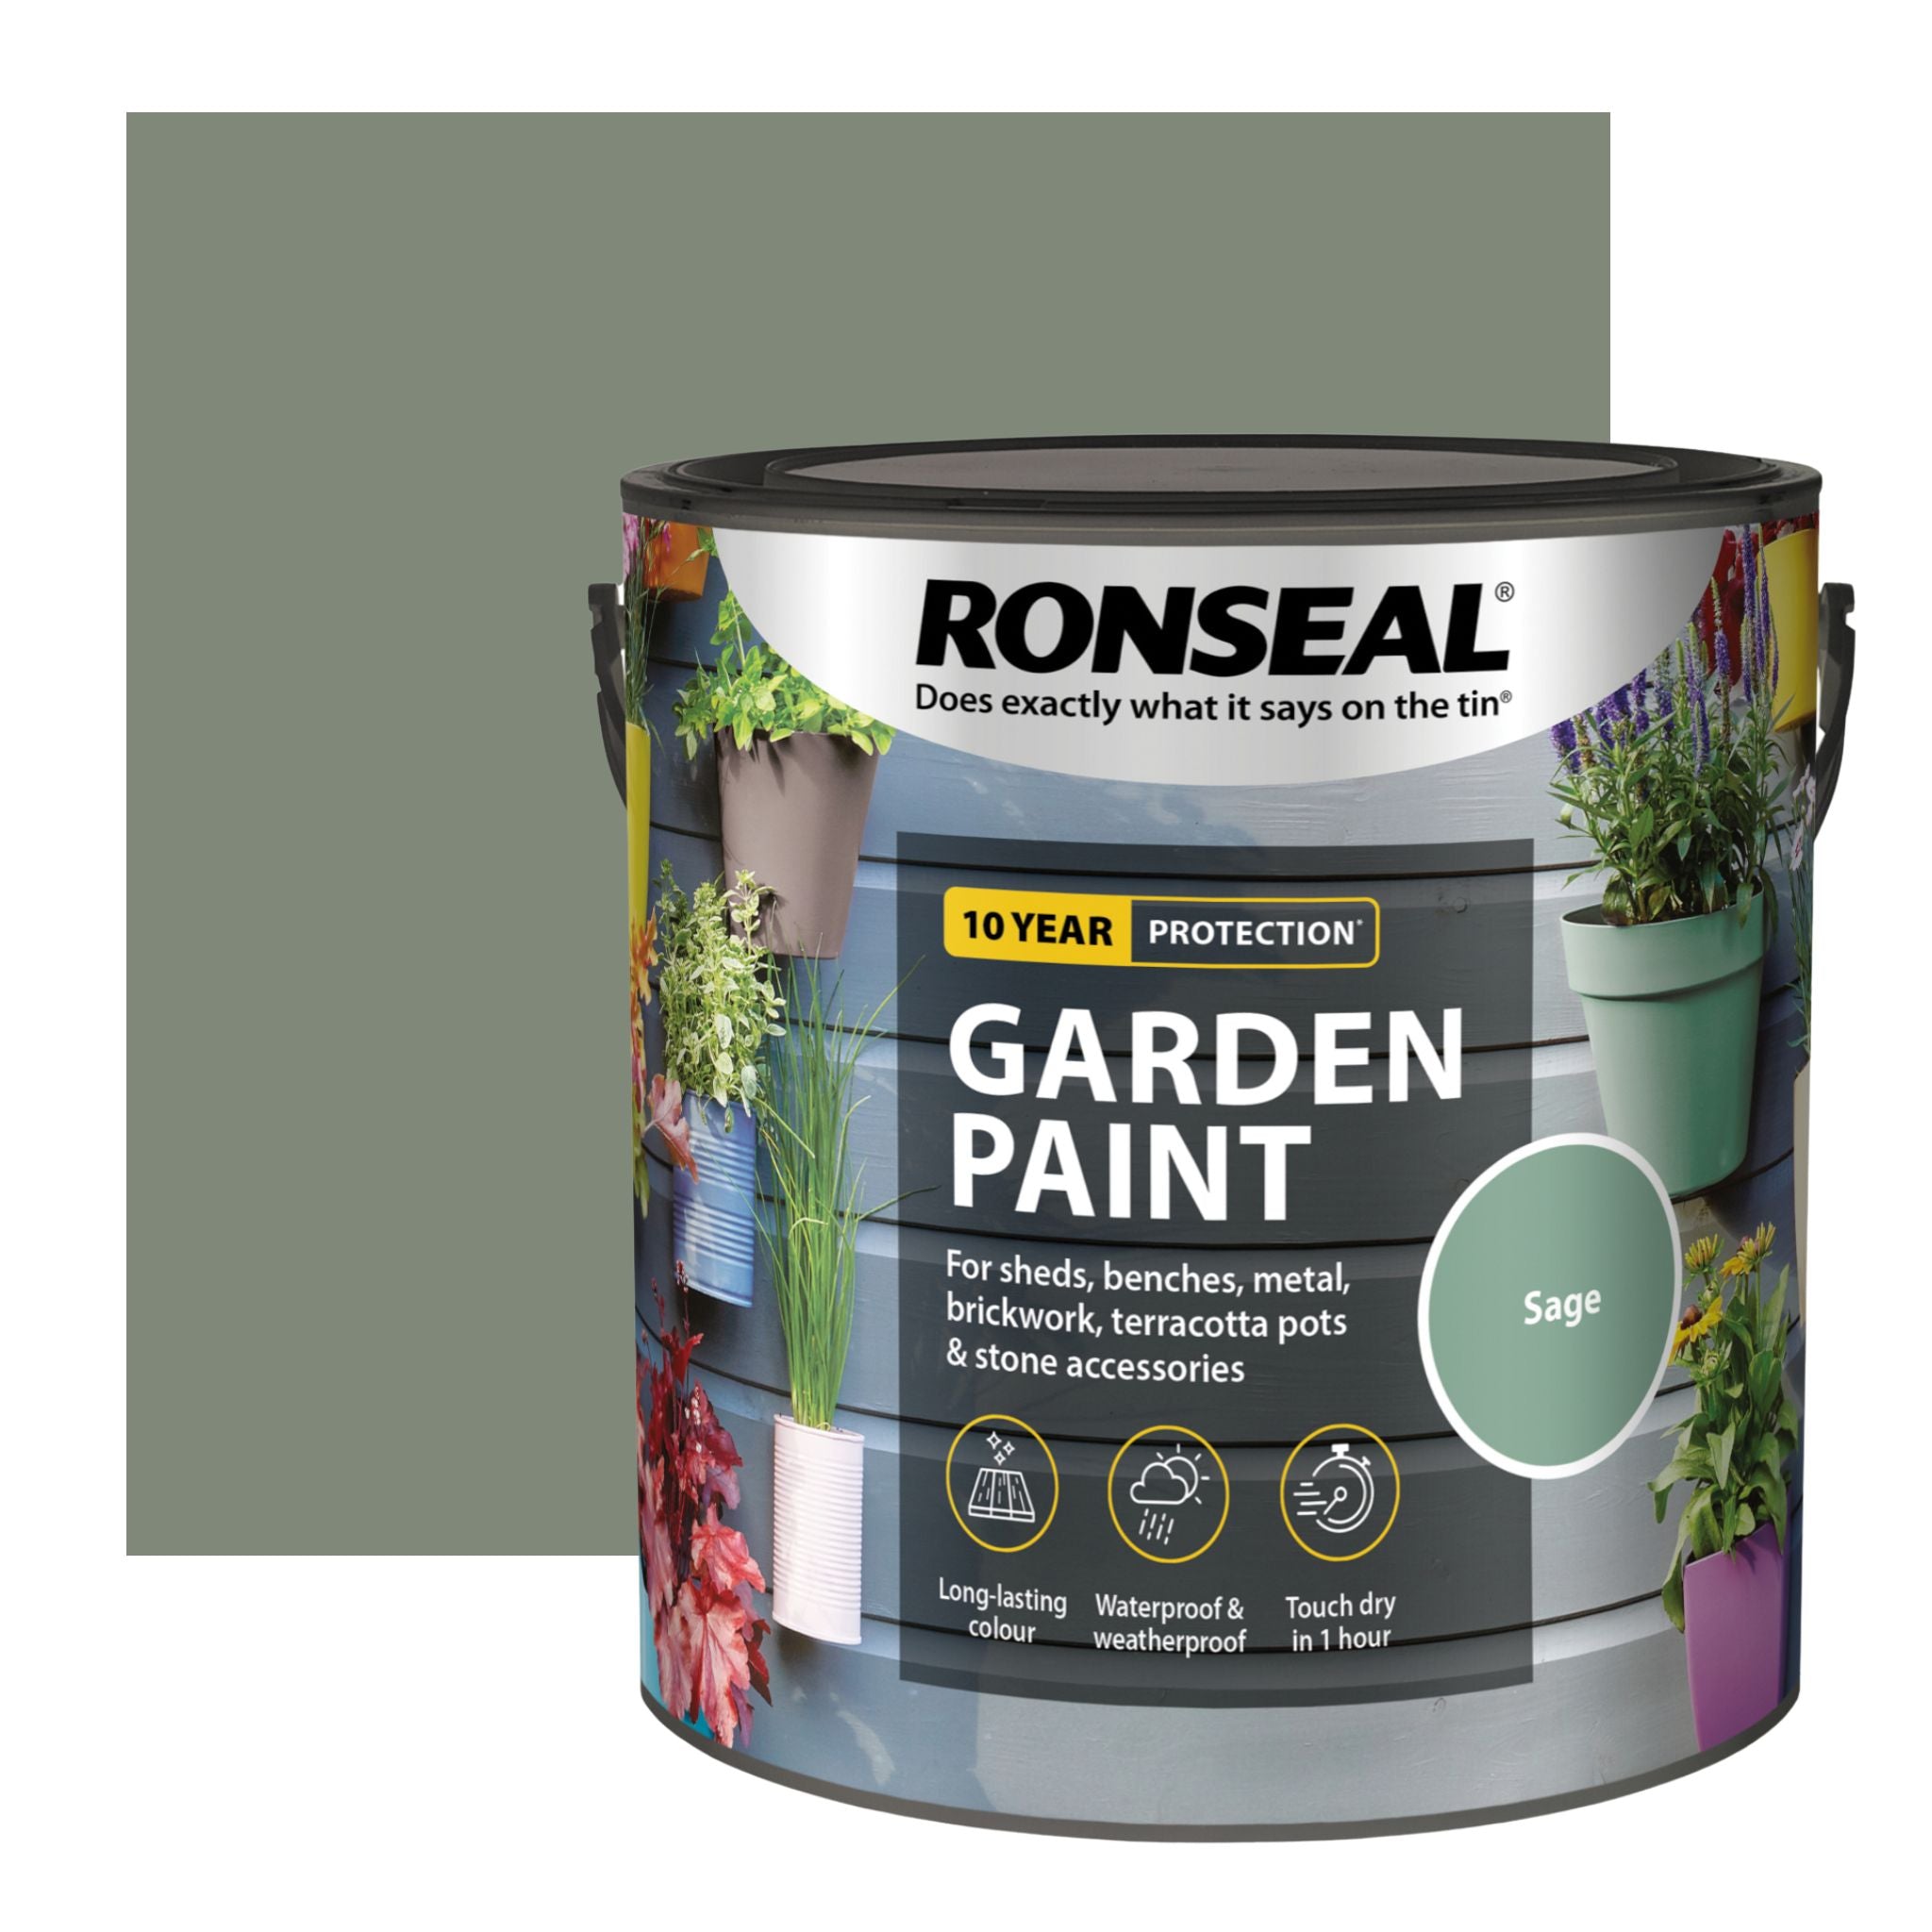 Ronseal Garden Paint - Restorate-5010214874194